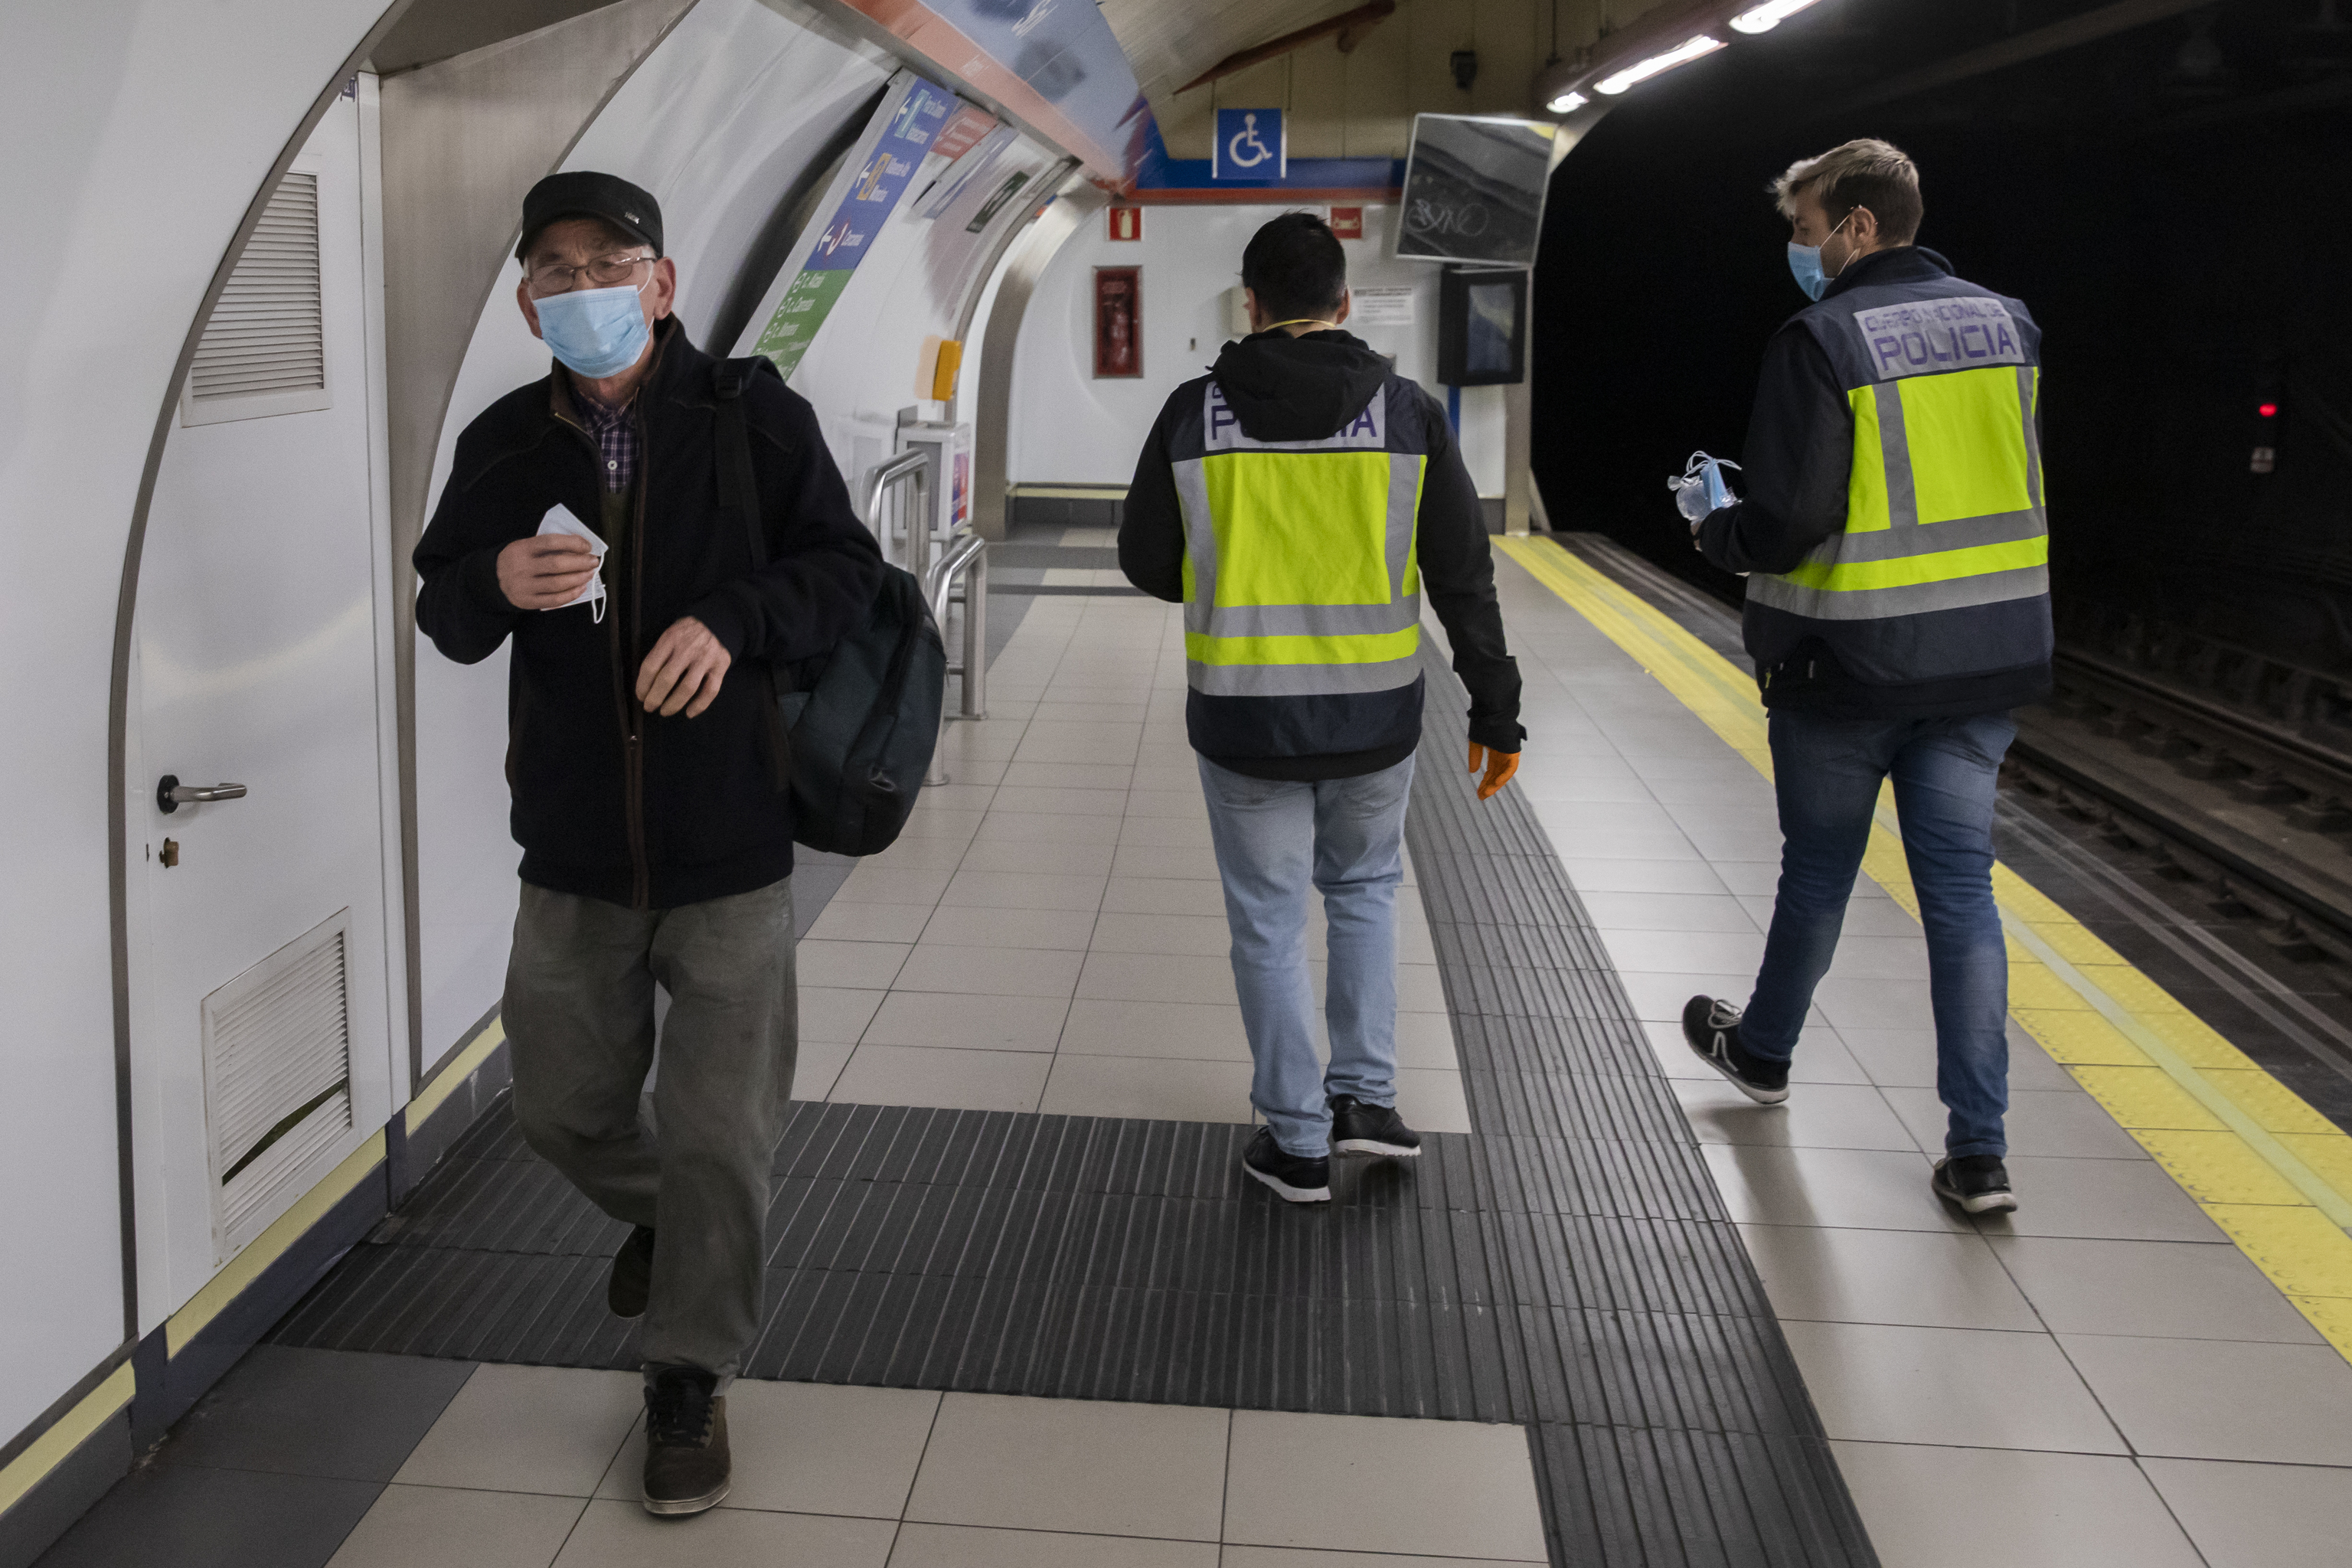 Restablecida la circulacin en la lnea 1 del Metro de Madrid tras decir un viajero que iba a explotar una bomba "en cinco minutos"